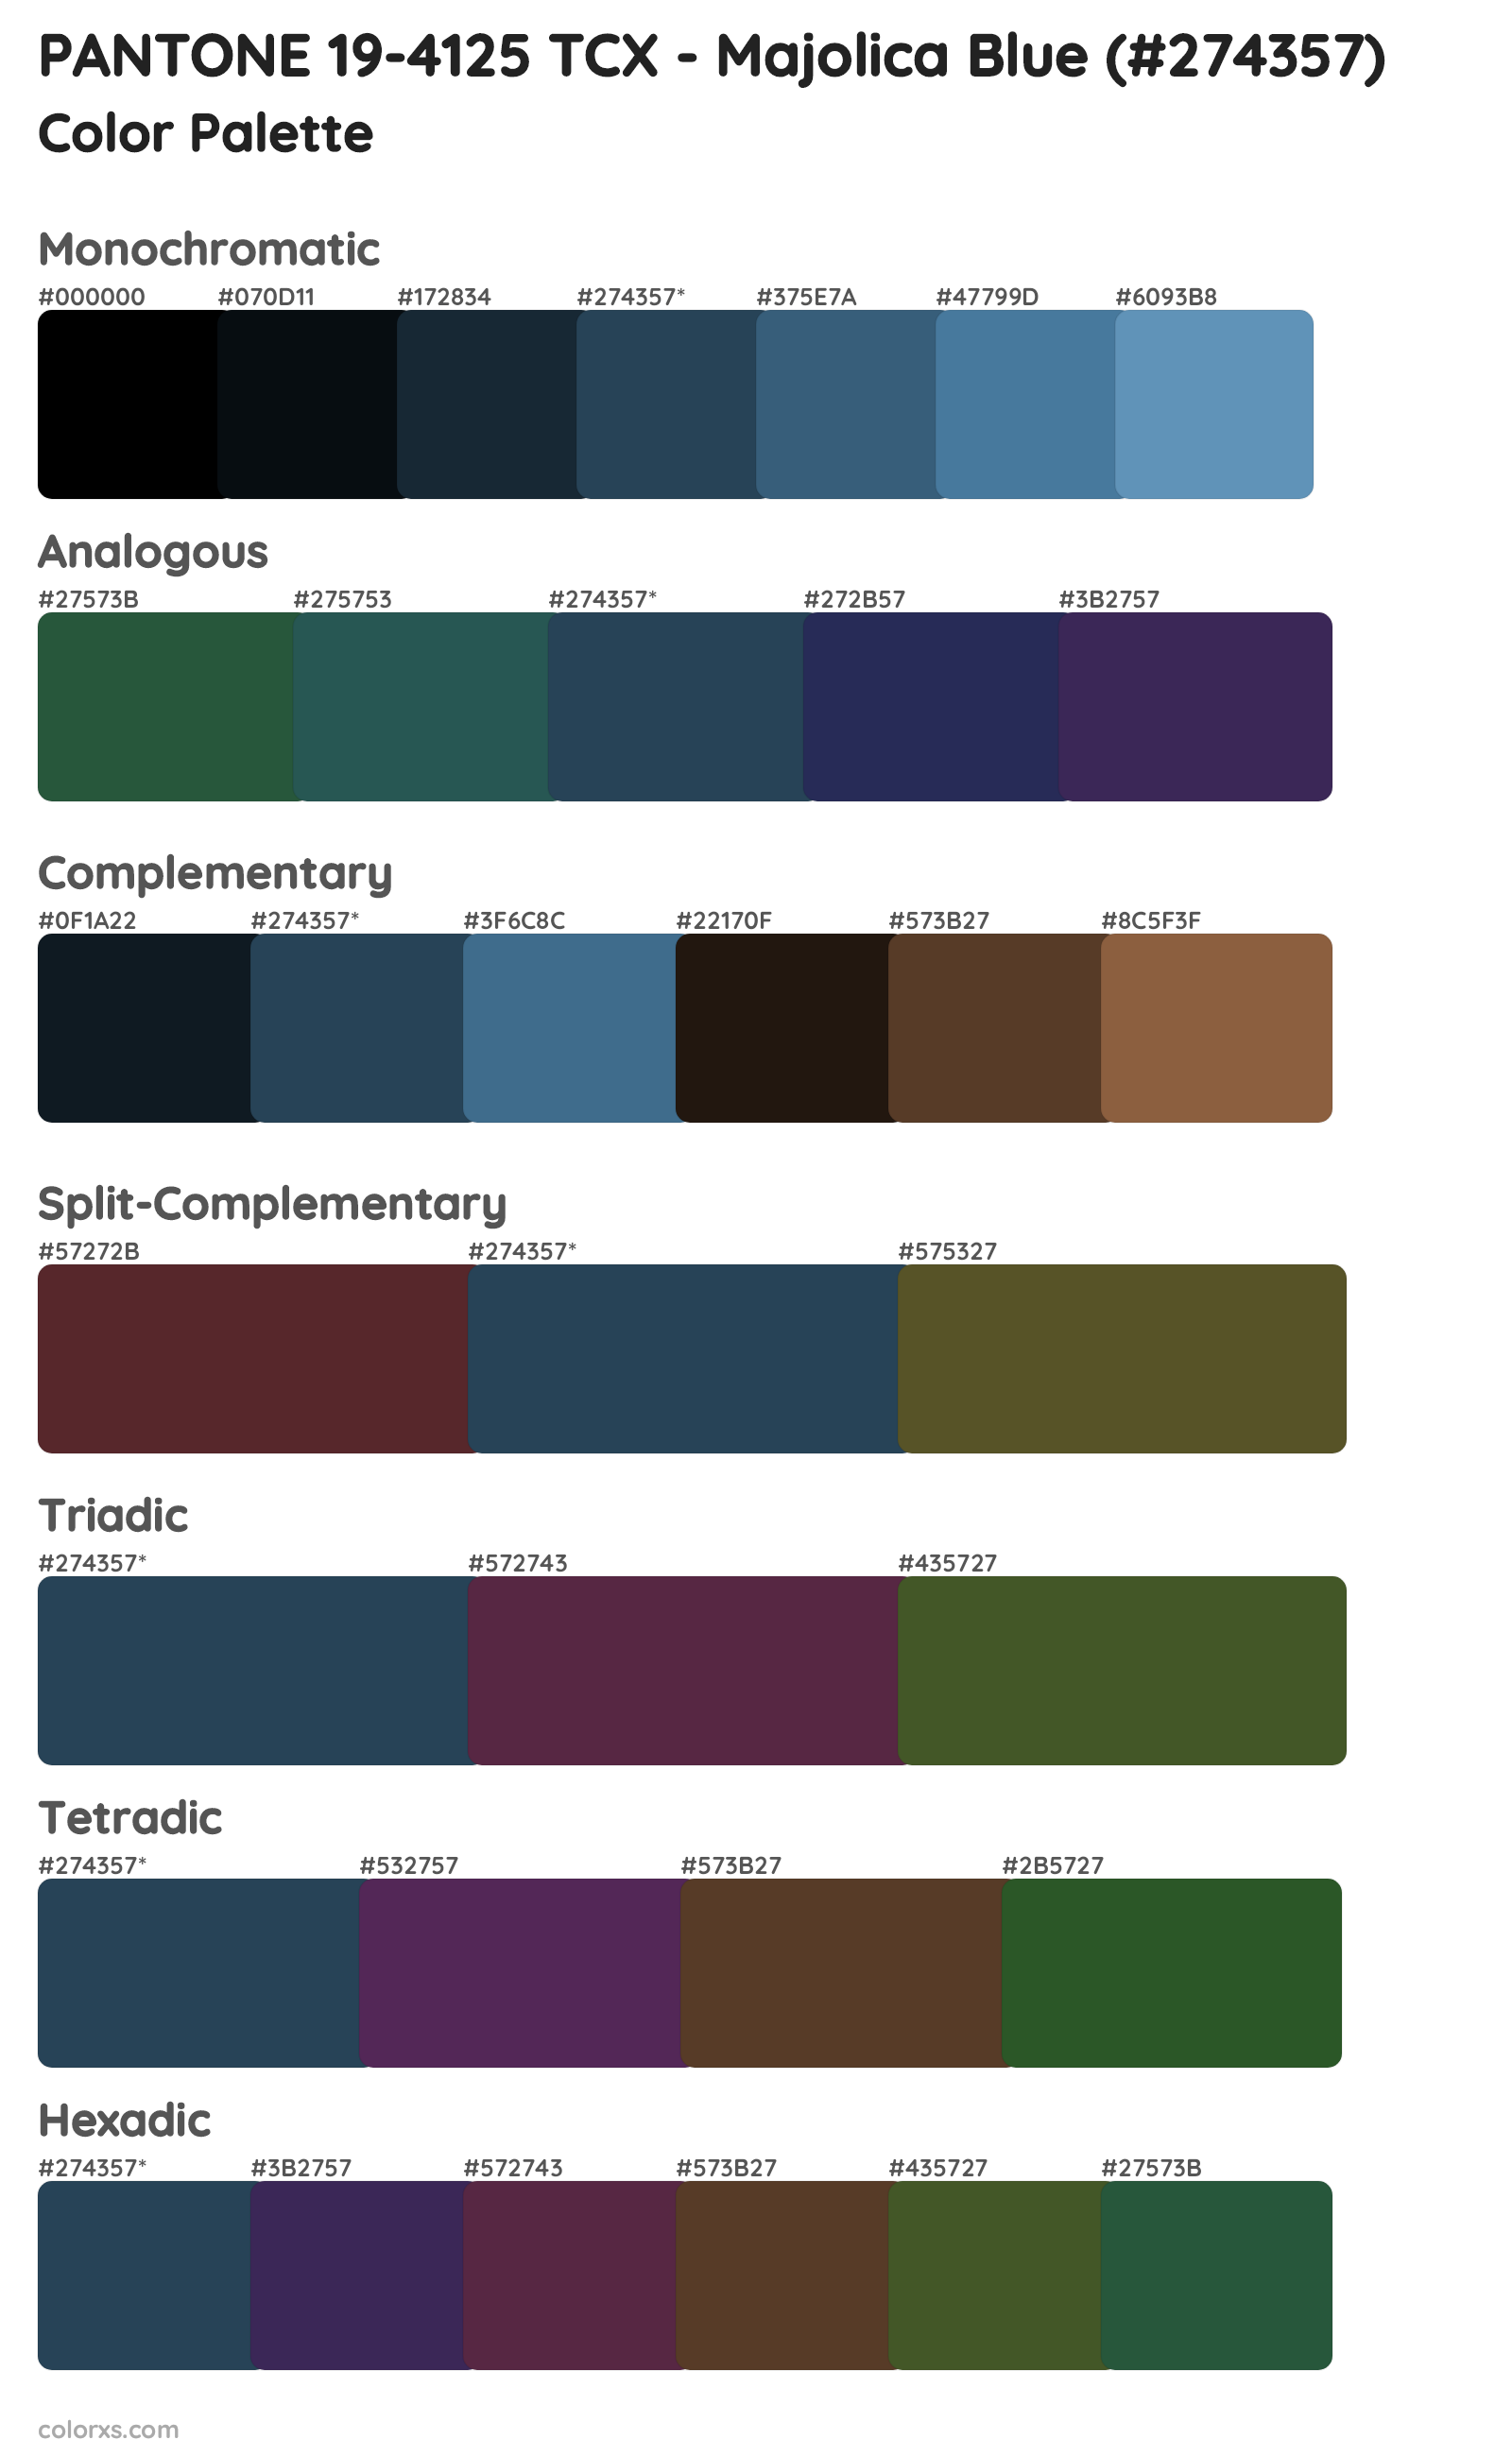 PANTONE 19-4125 TCX - Majolica Blue Color Scheme Palettes